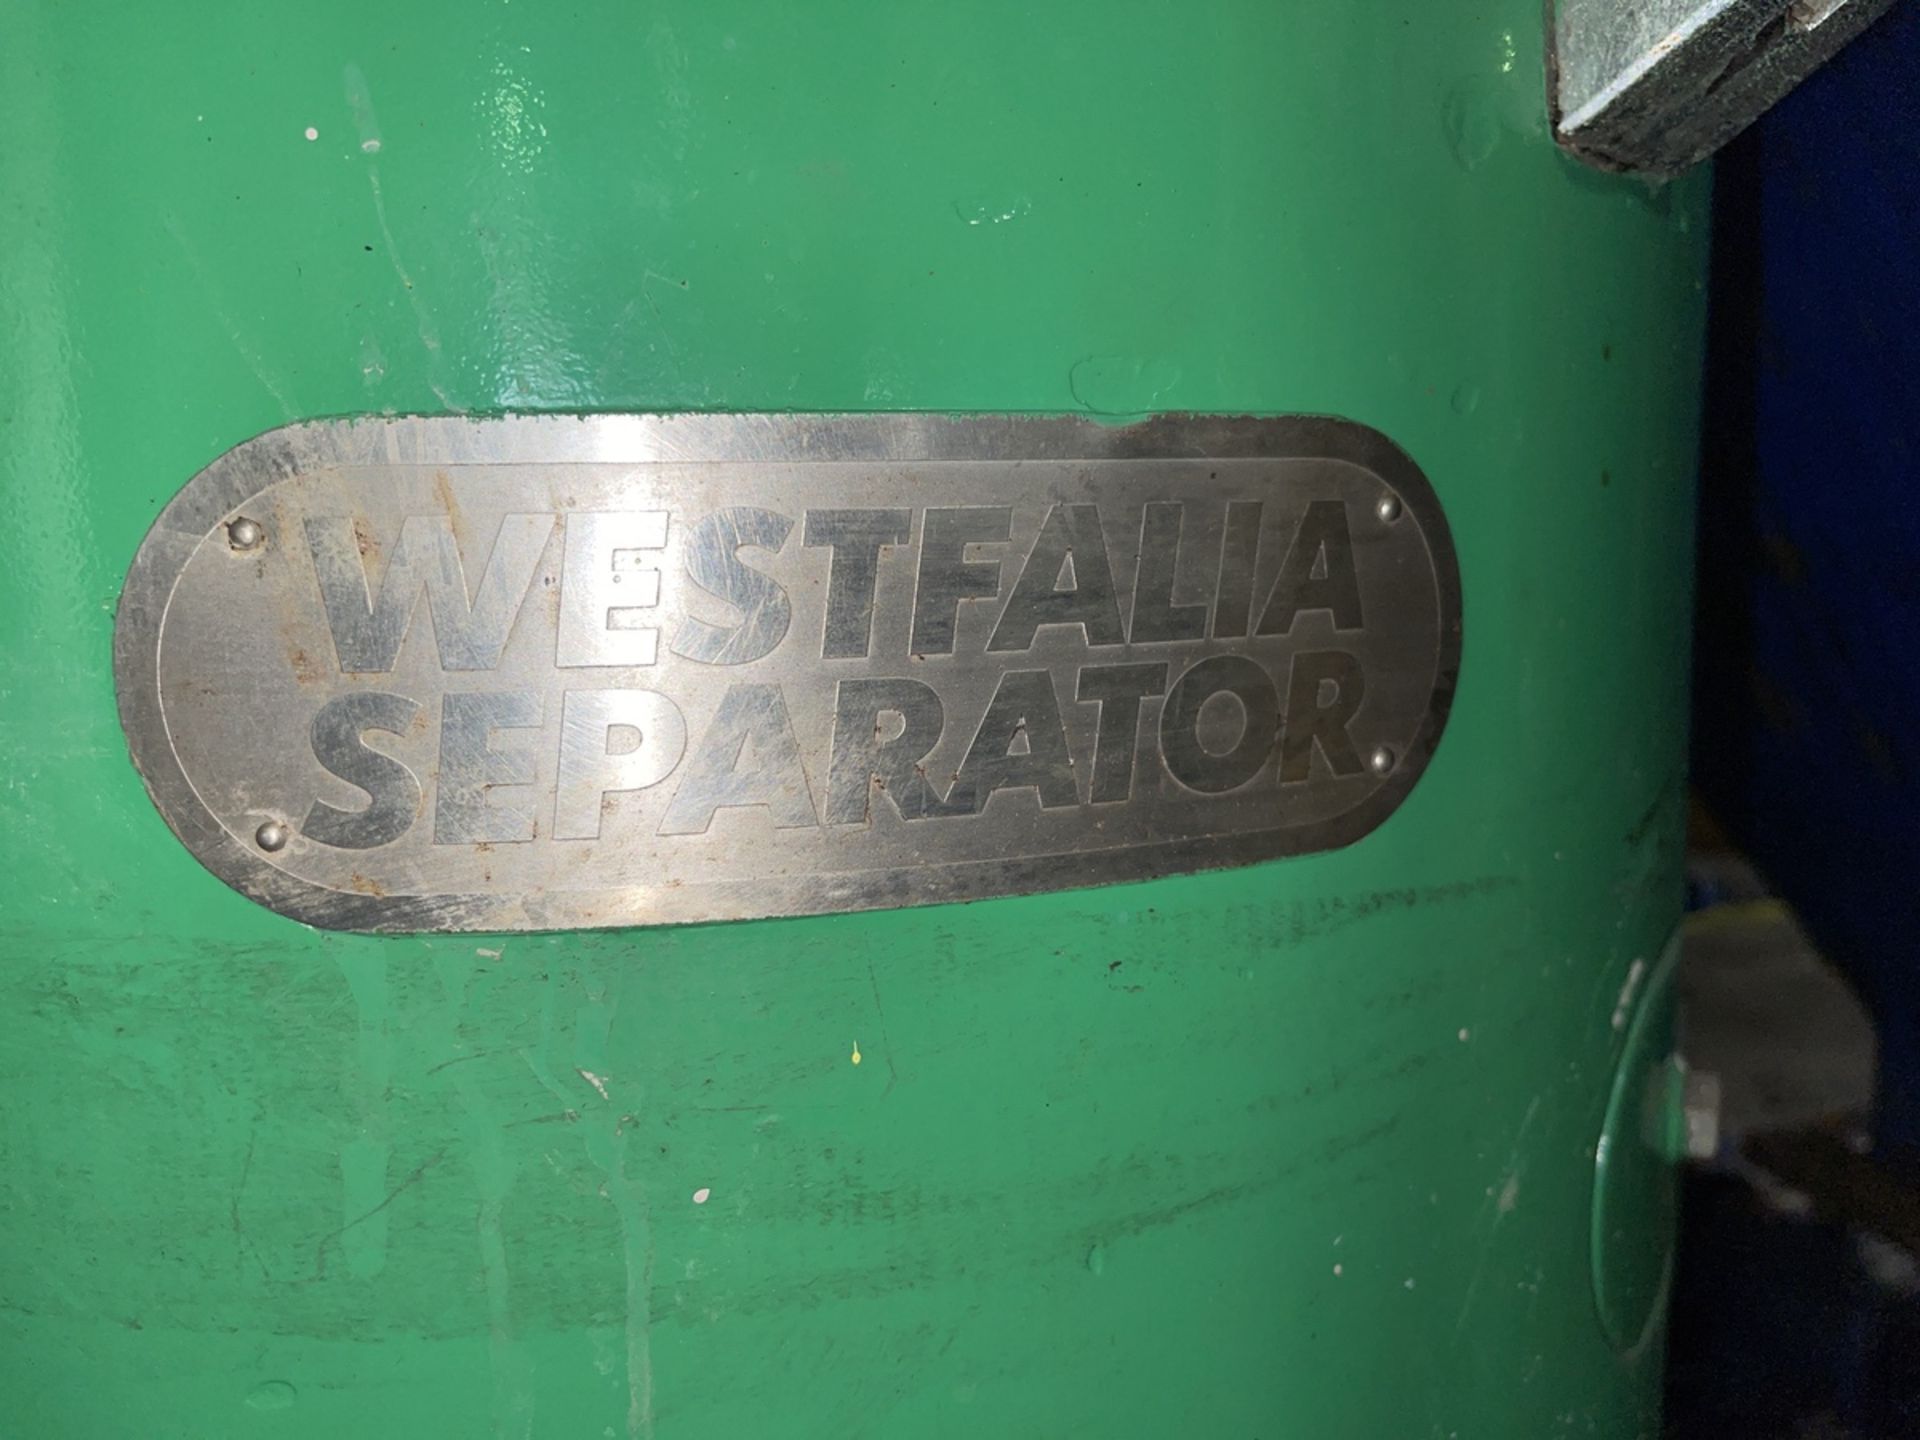 Westfalia Separator Model 3FM67-6 Centerfuge, 380V, 17.3A, 10.8HP, 95 - Subj to Bulk | Rig Fee $1000 - Image 5 of 6